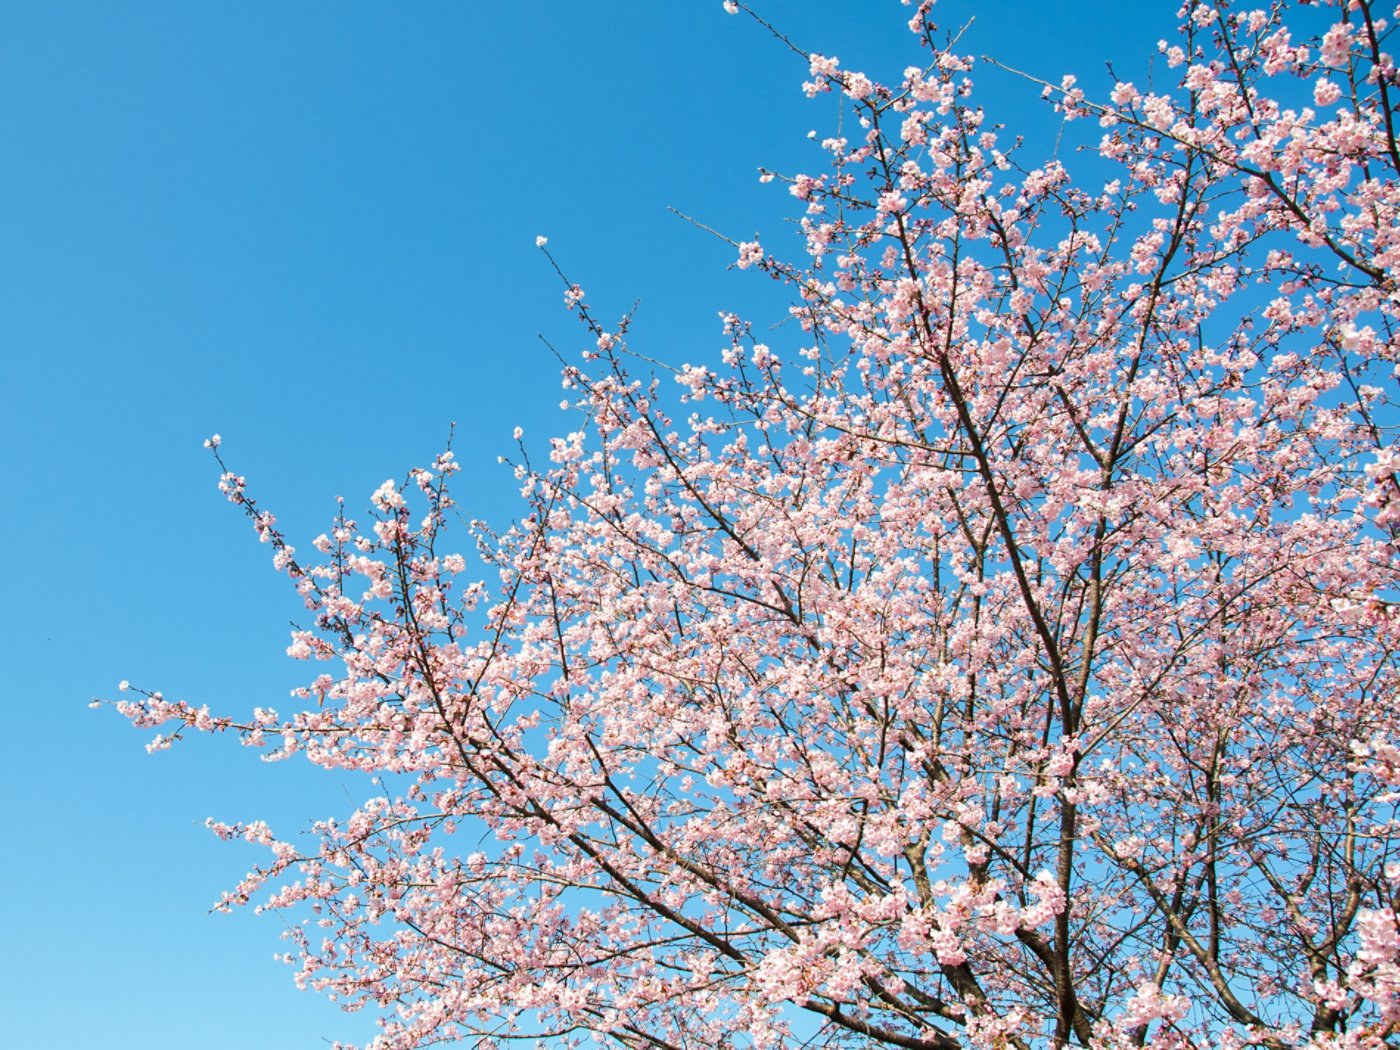 Cherry tree in full bloom under blue sunny sky in Japan in spring